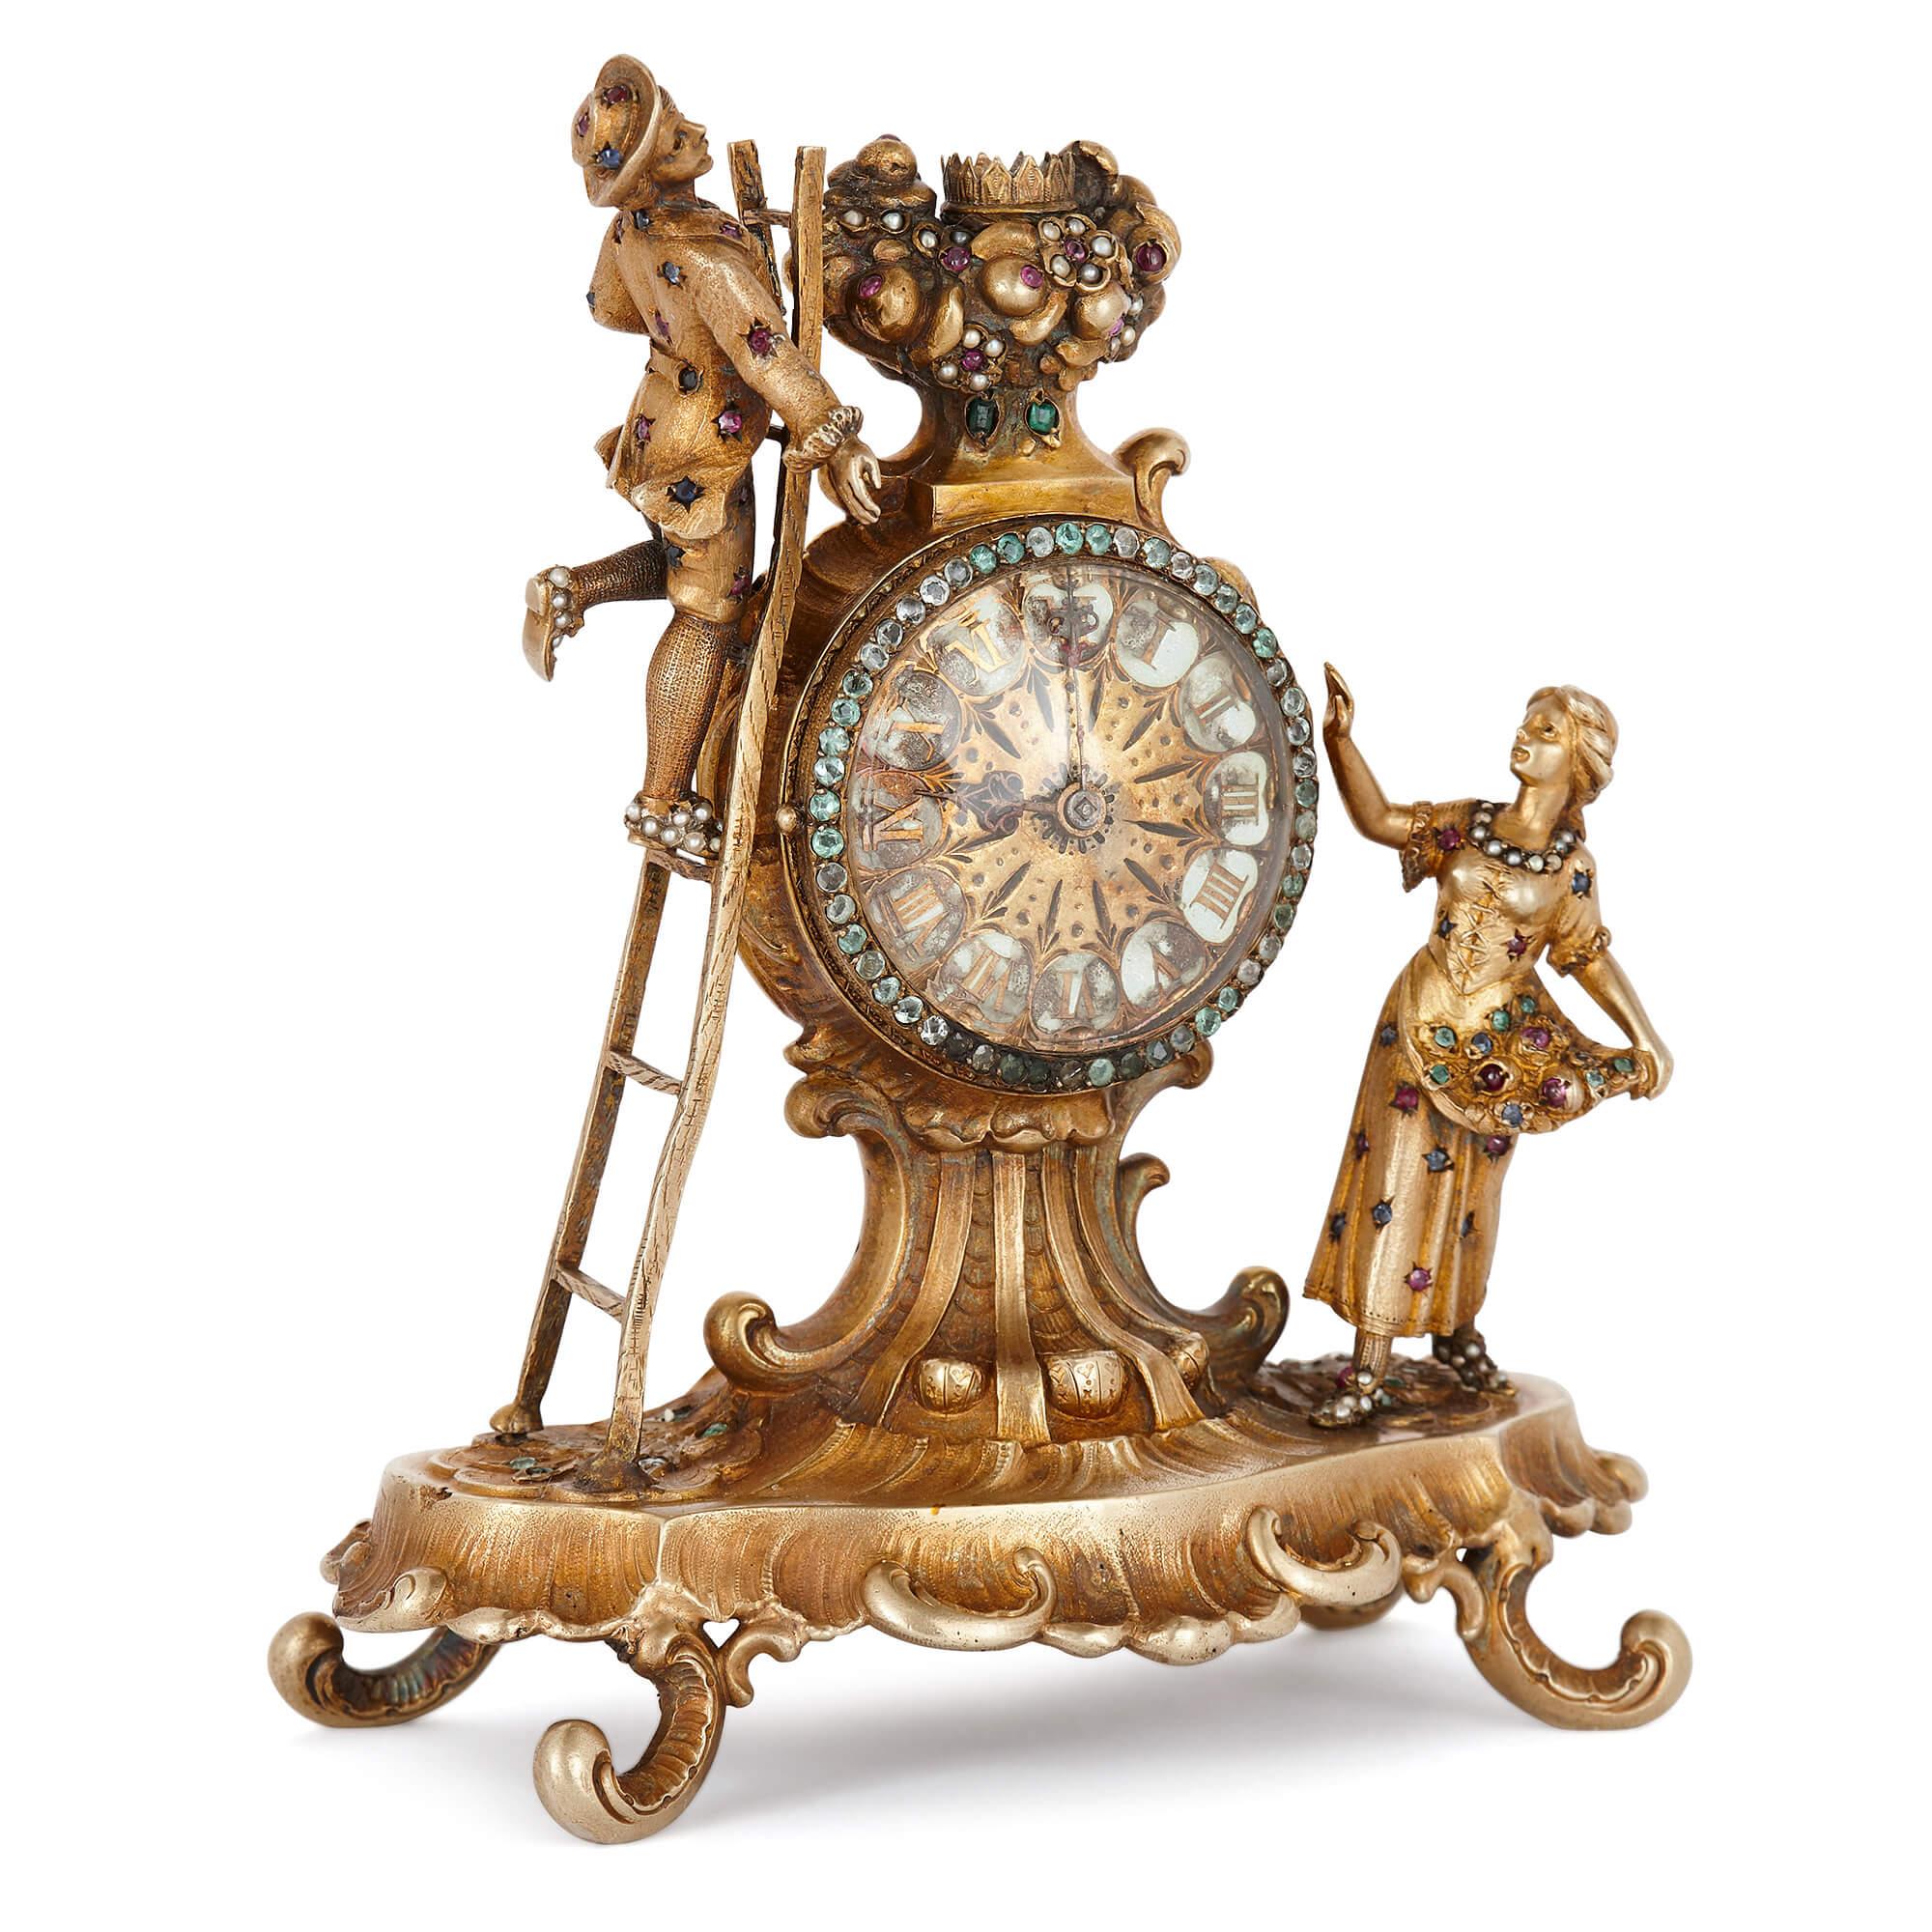 Cette horloge de table ancienne en argent doré, incrustée de bijoux, est une pièce exquise de l'artisanat viennois. Elle se compose d'une base festonnée, qui repose sur quatre pieds en forme de C, et surmontée d'un cadran émaillé circulaire